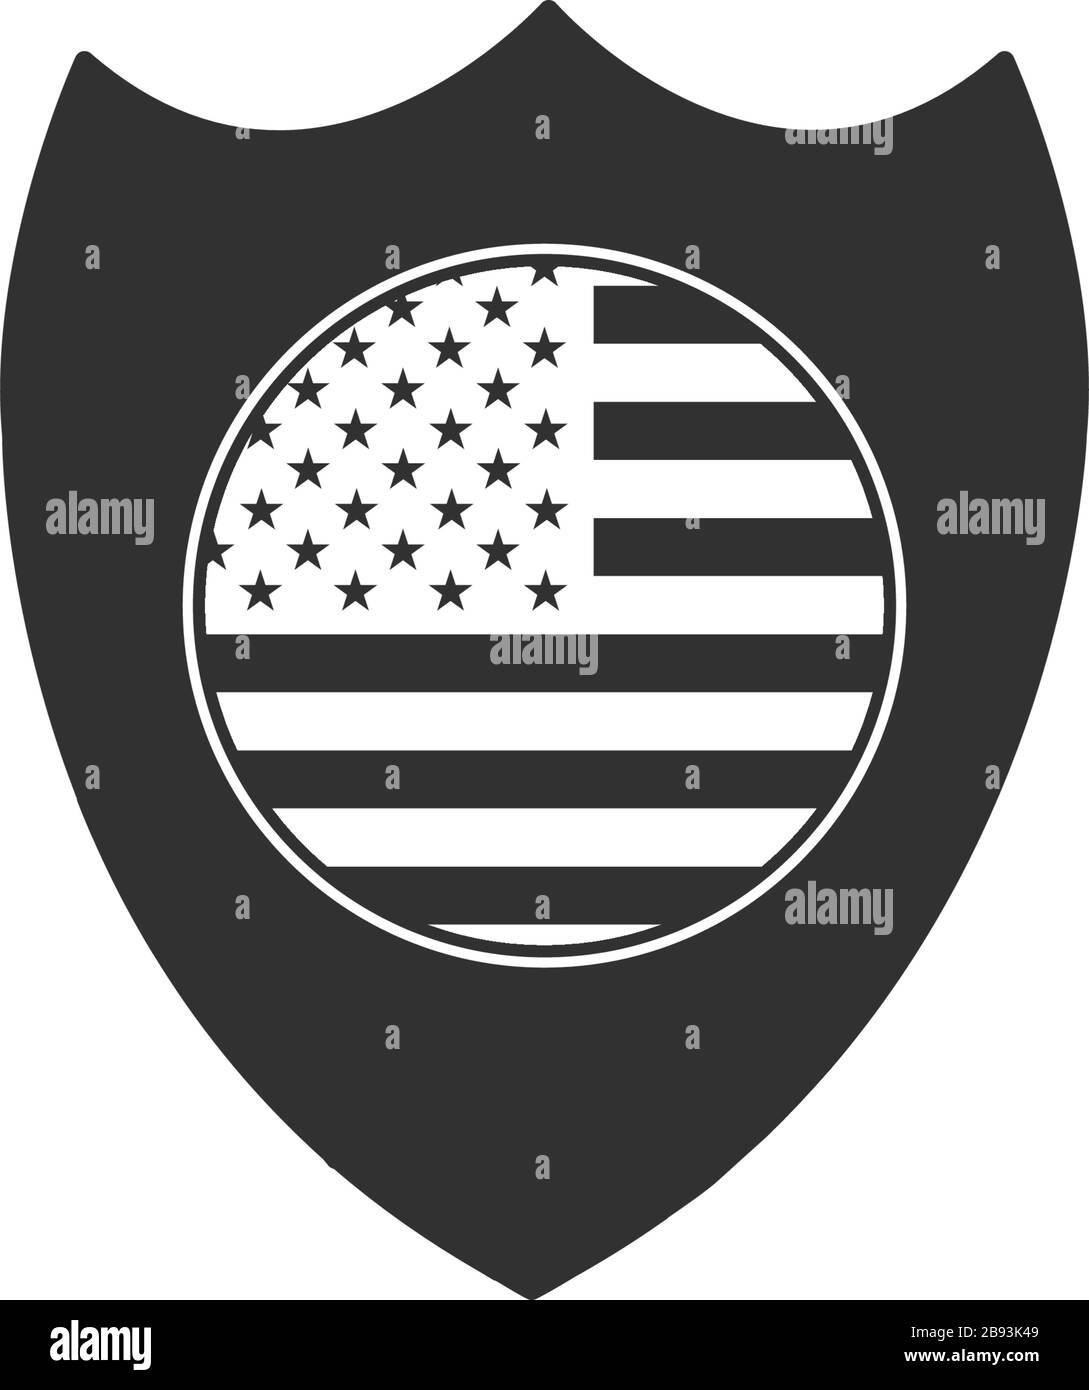 Drapeau américain dans le cercle de l'emblème du bouclier national. Illustration vectorielle de stock isolée sur fond blanc. Illustration de Vecteur